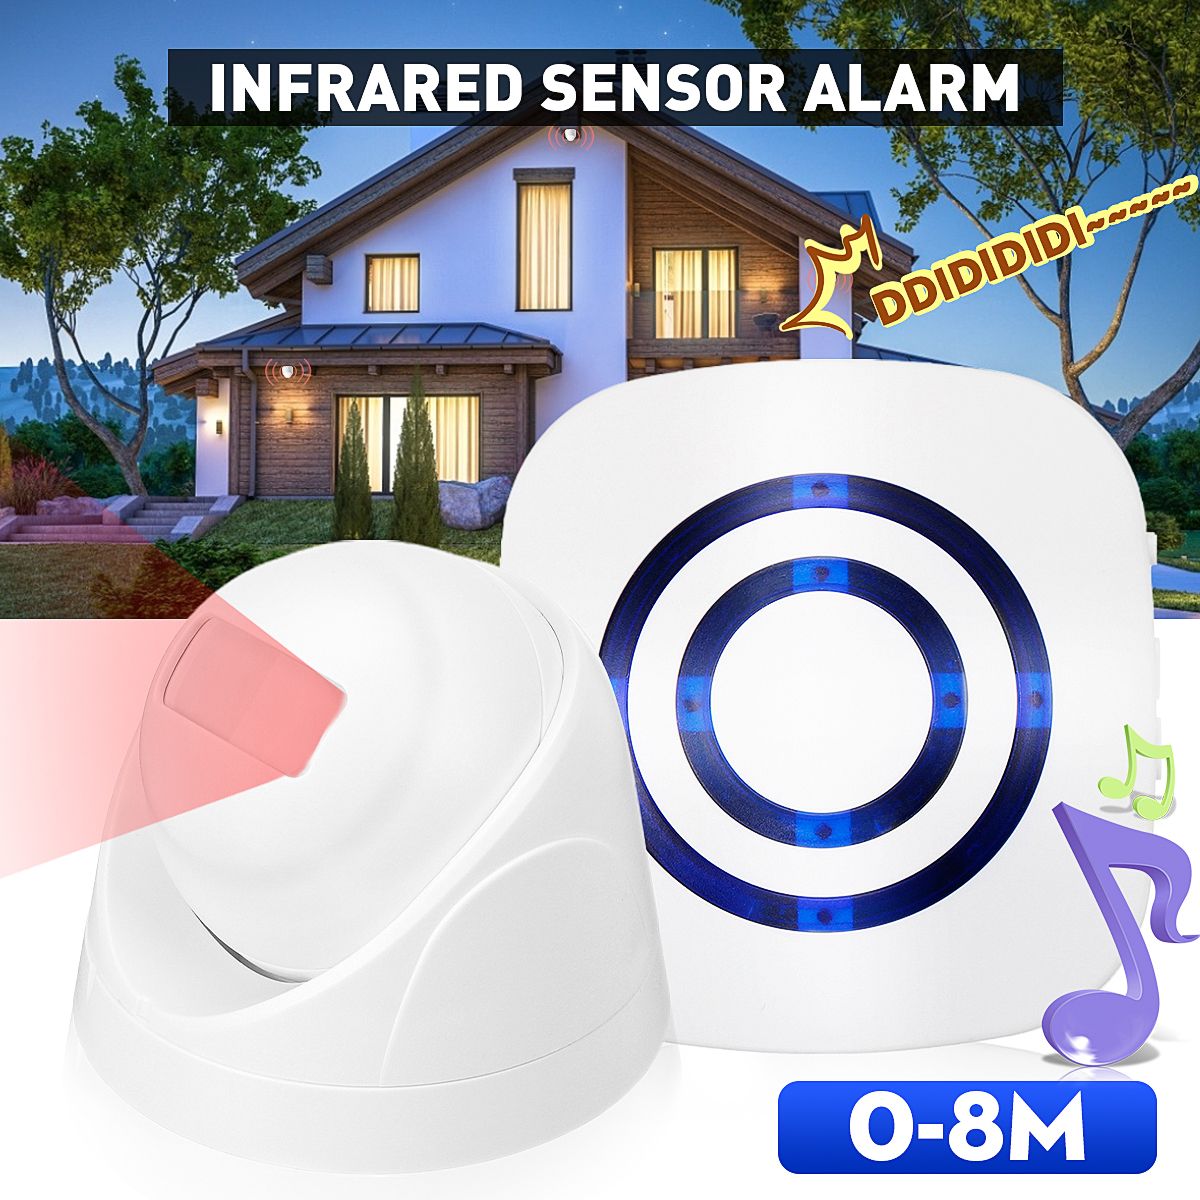 Wireless-Infrared-Motion-Sensor-Door-Security-Bell-Alarm-Chime-Entrance-Alert-Doorbell-1723766